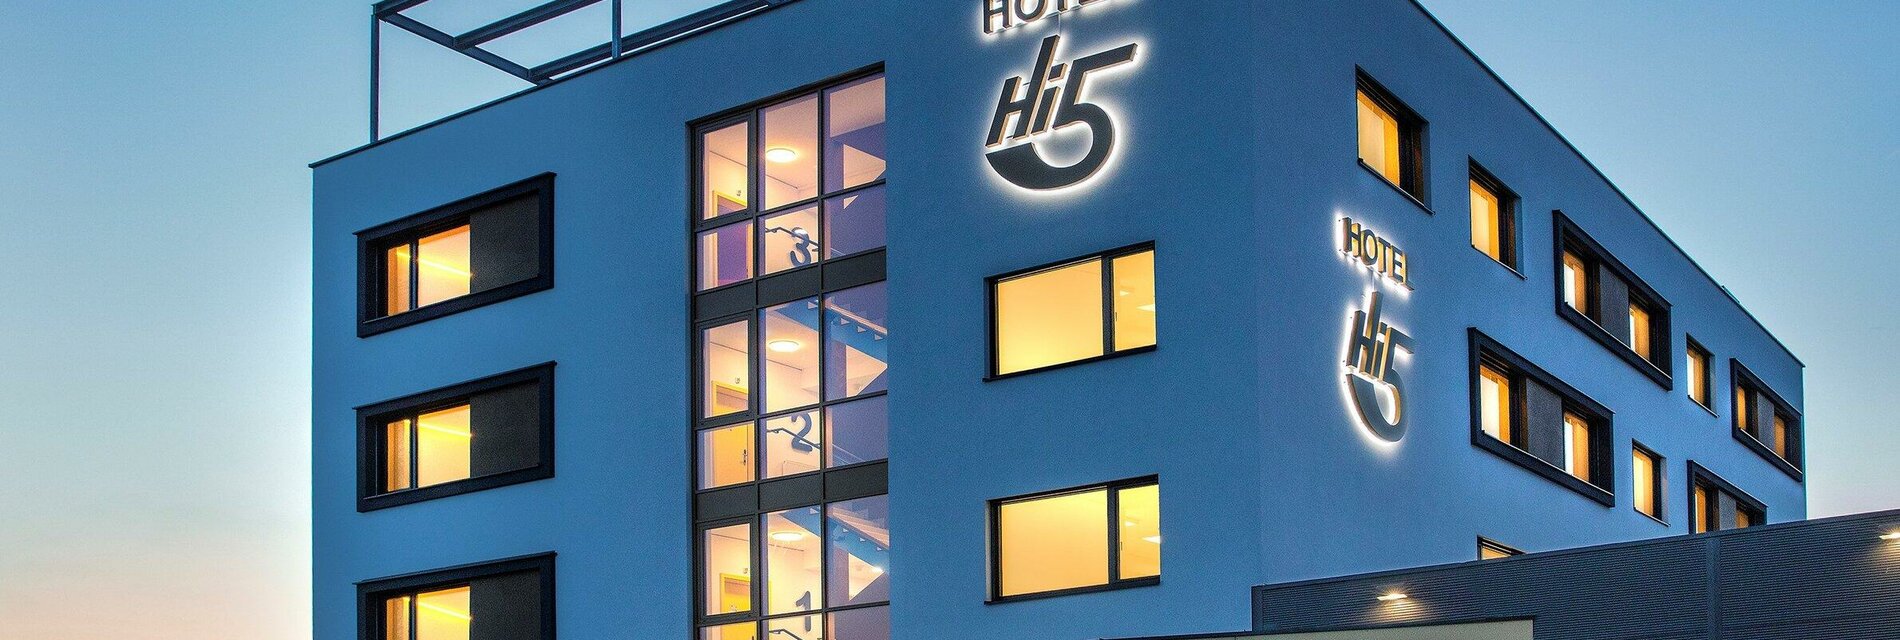 Hi5 Hotel in der Abenddämmerung